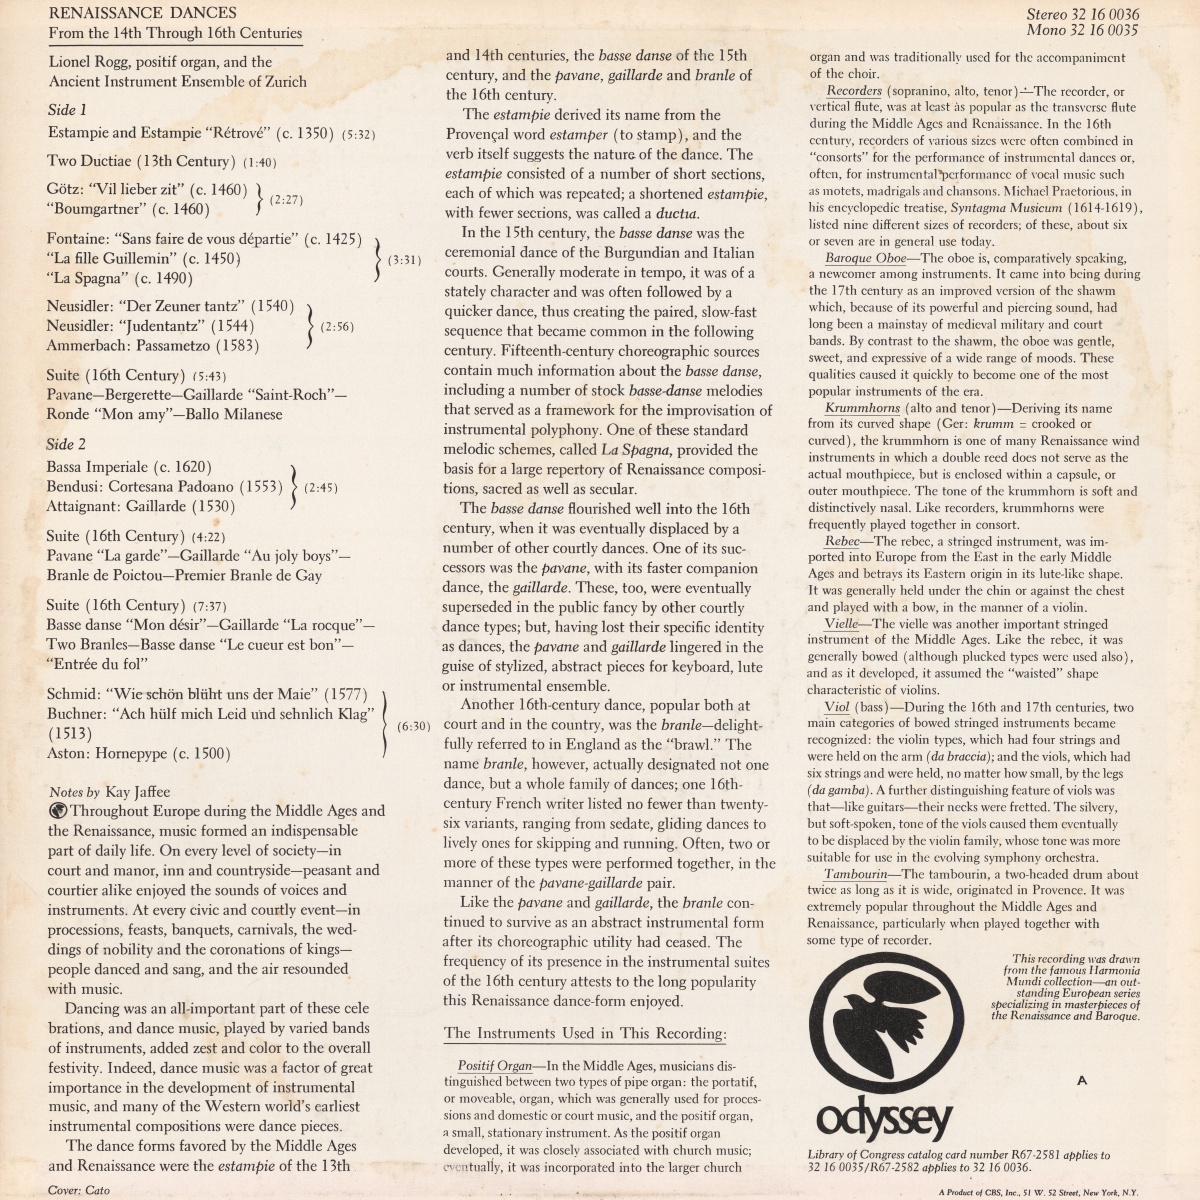 Verso de la pochette du disque Odyssey 32 16 0036 (Renaissance Dances from the 14th through 16th Centuries)